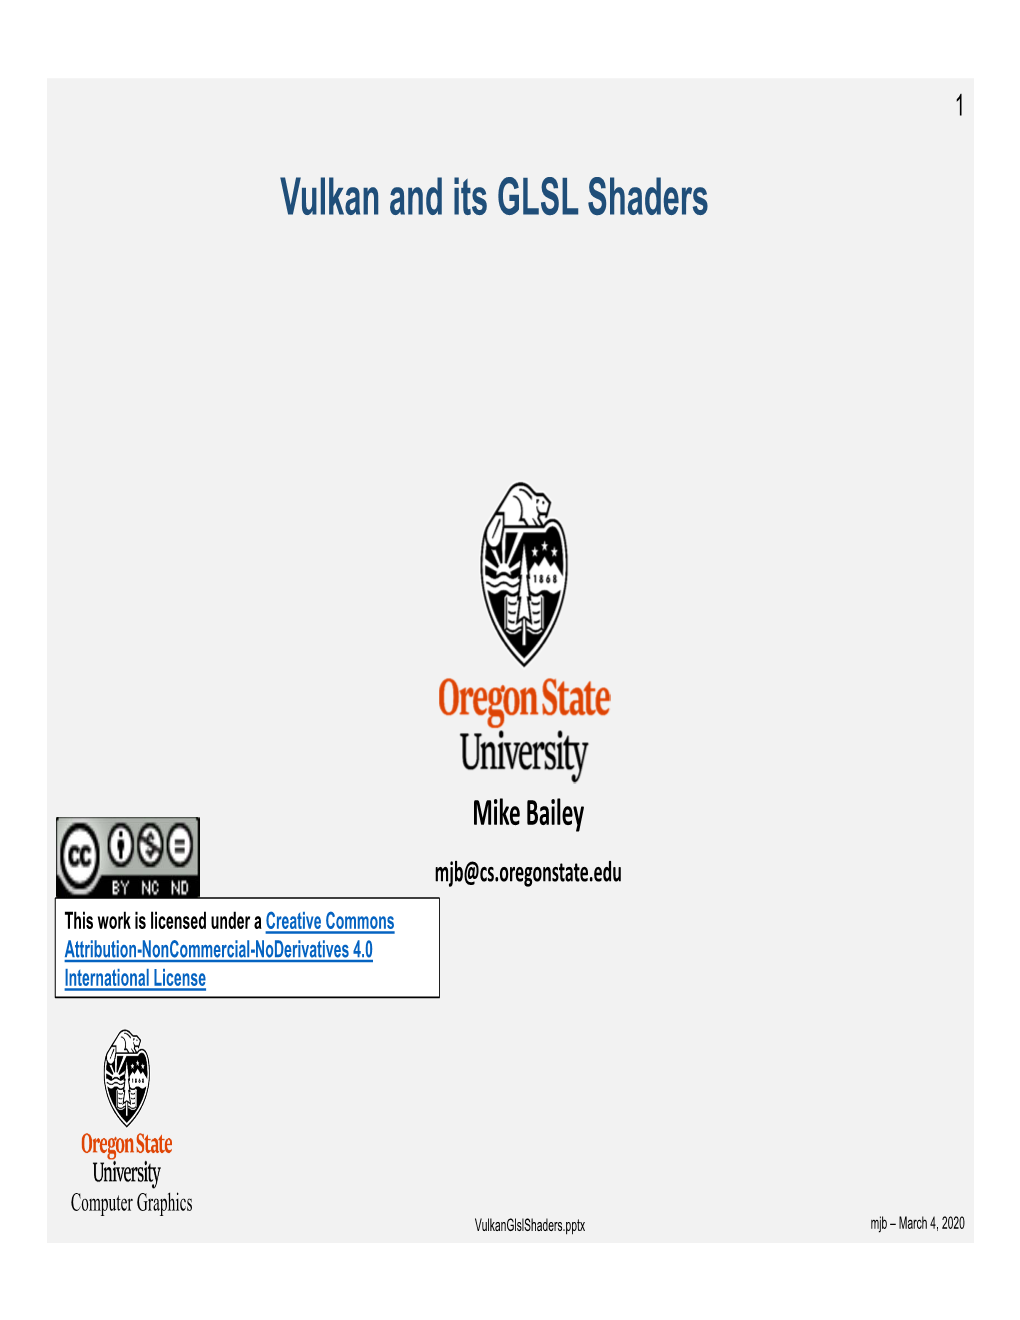 Vulkan and Its GLSL Shaders